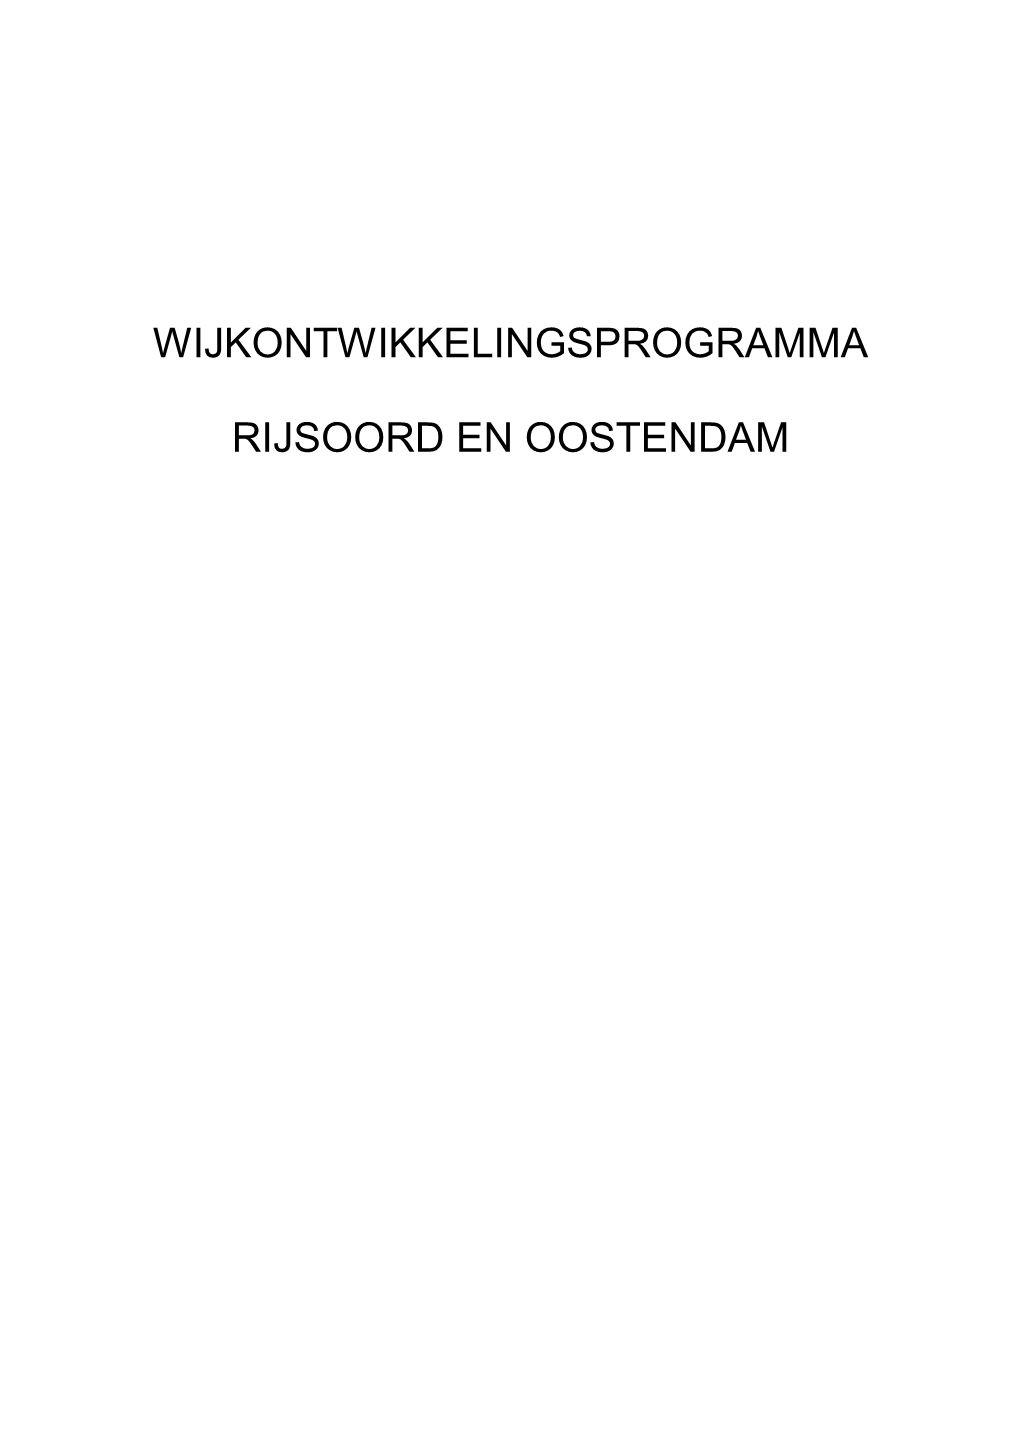 15.Wijkontwikkelingsprogramma Rijsoord Oostendam